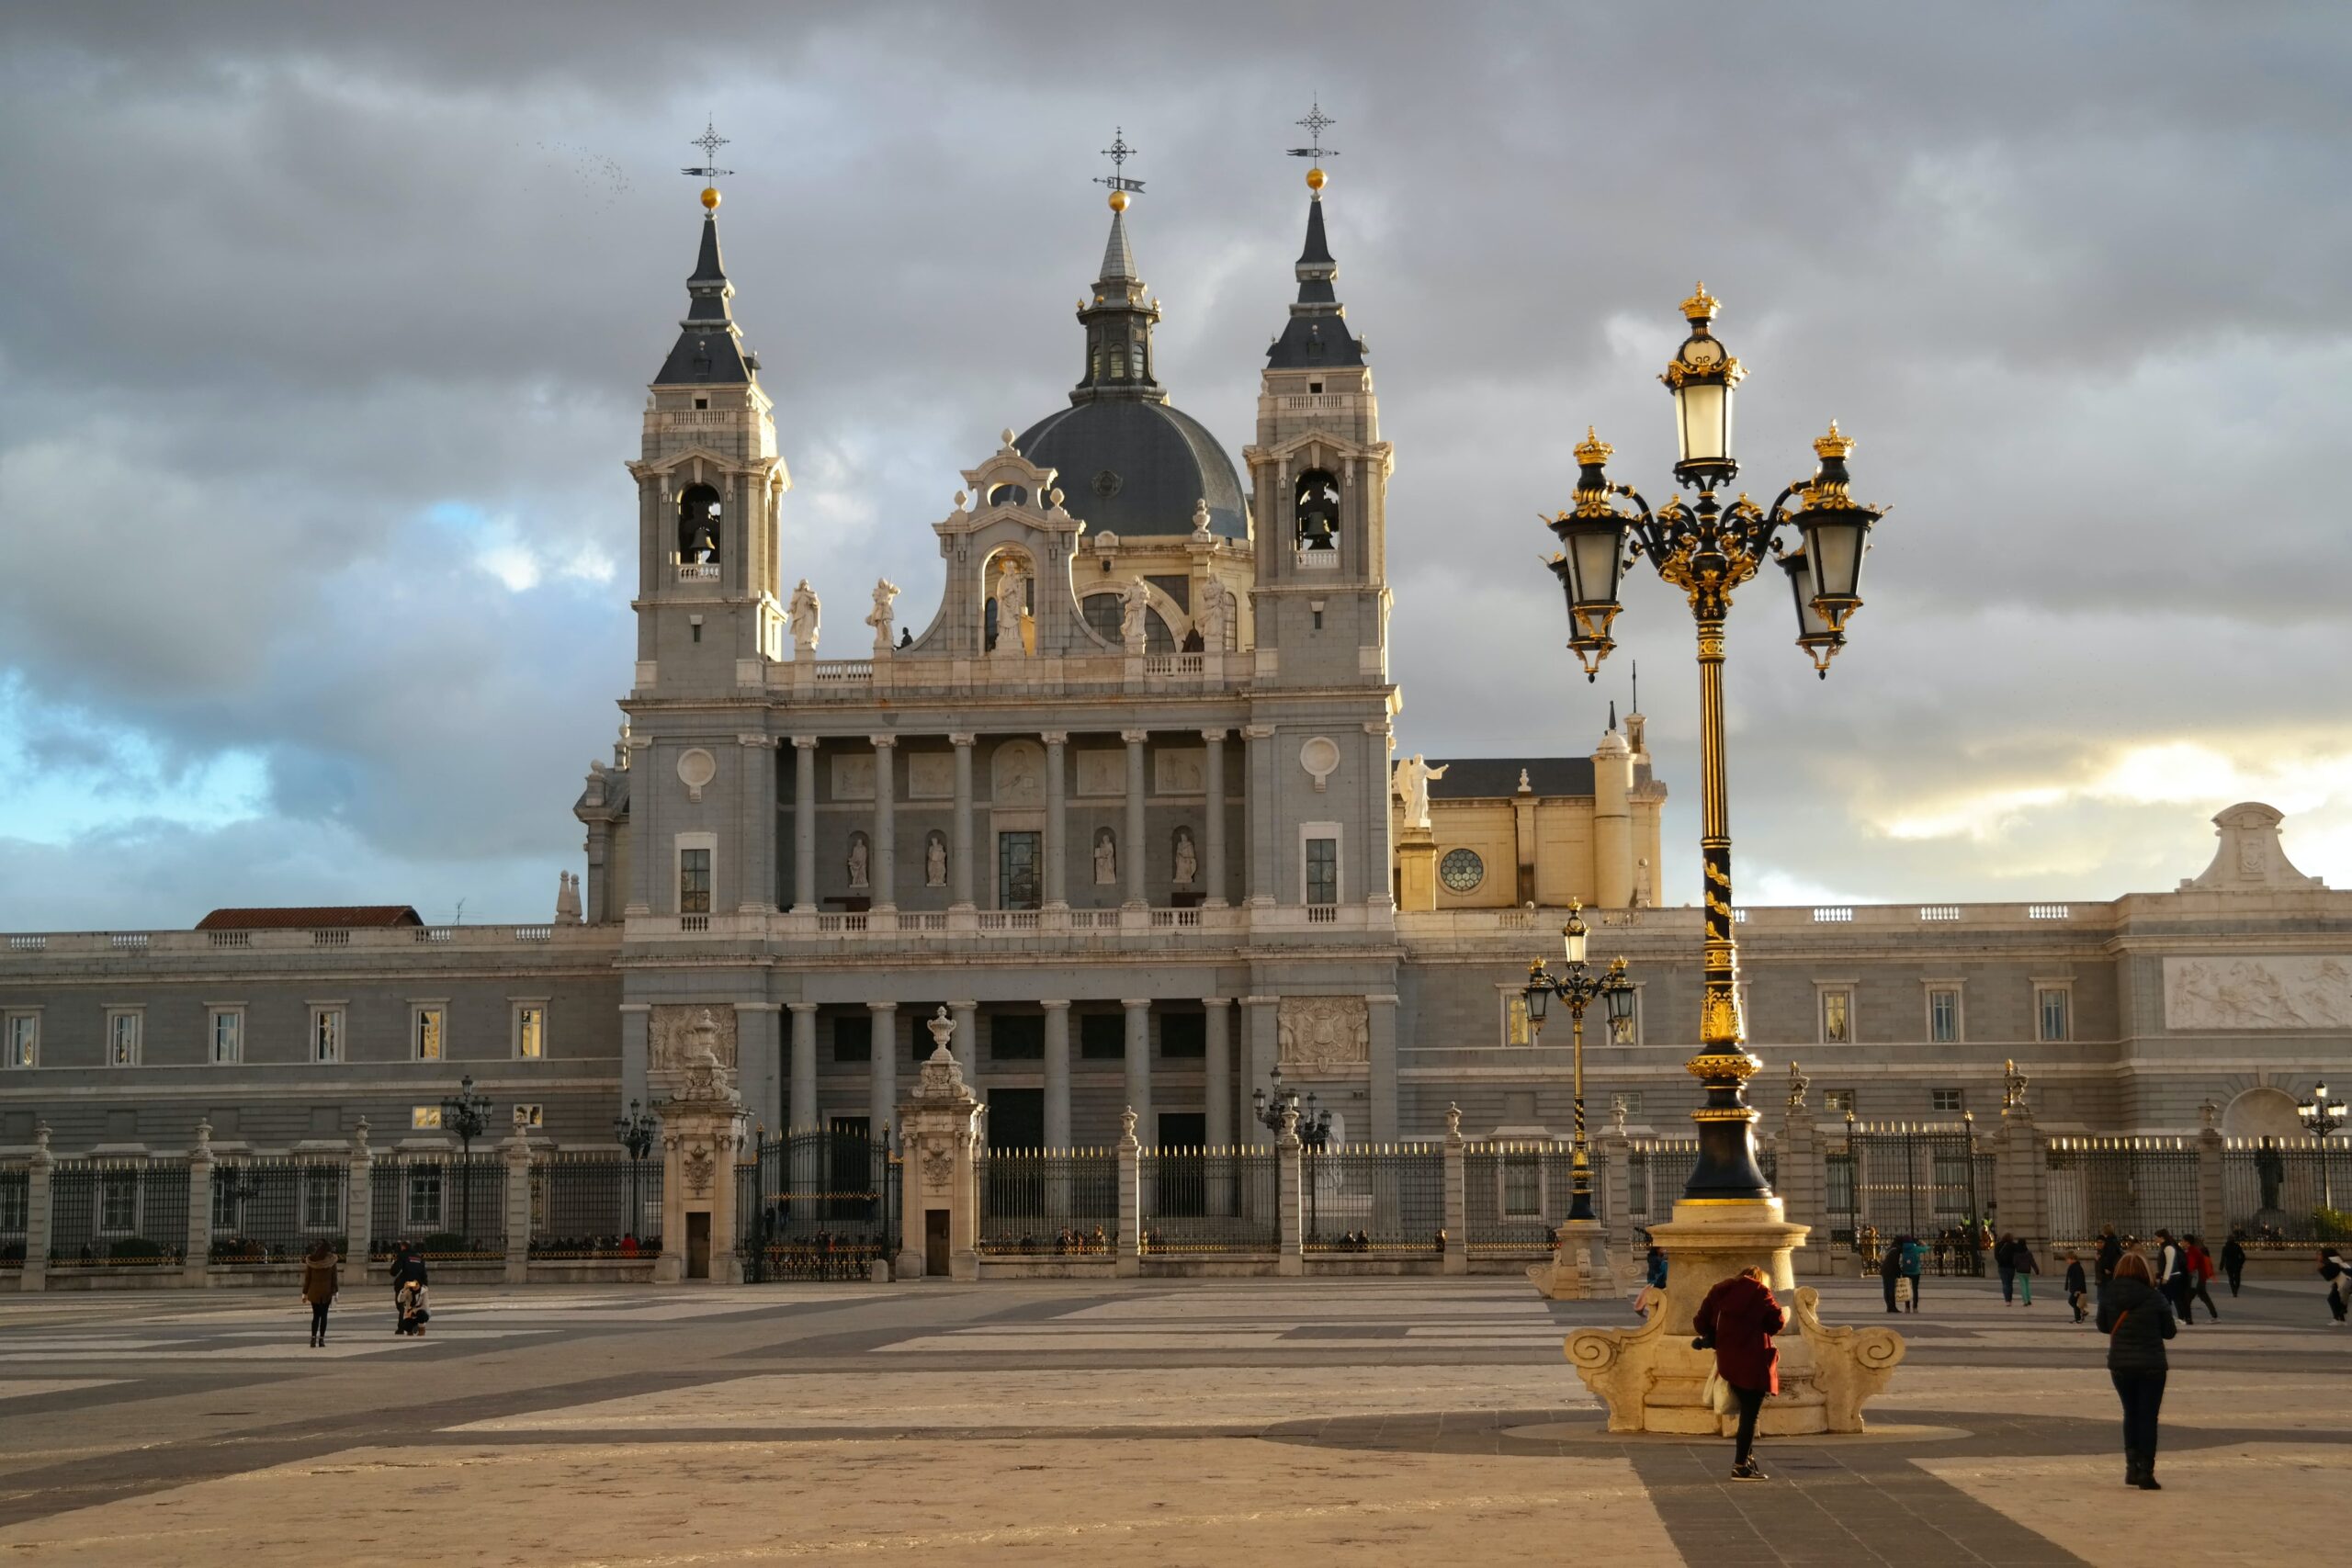 Royal Palace of Madrid, Madrid, Spain